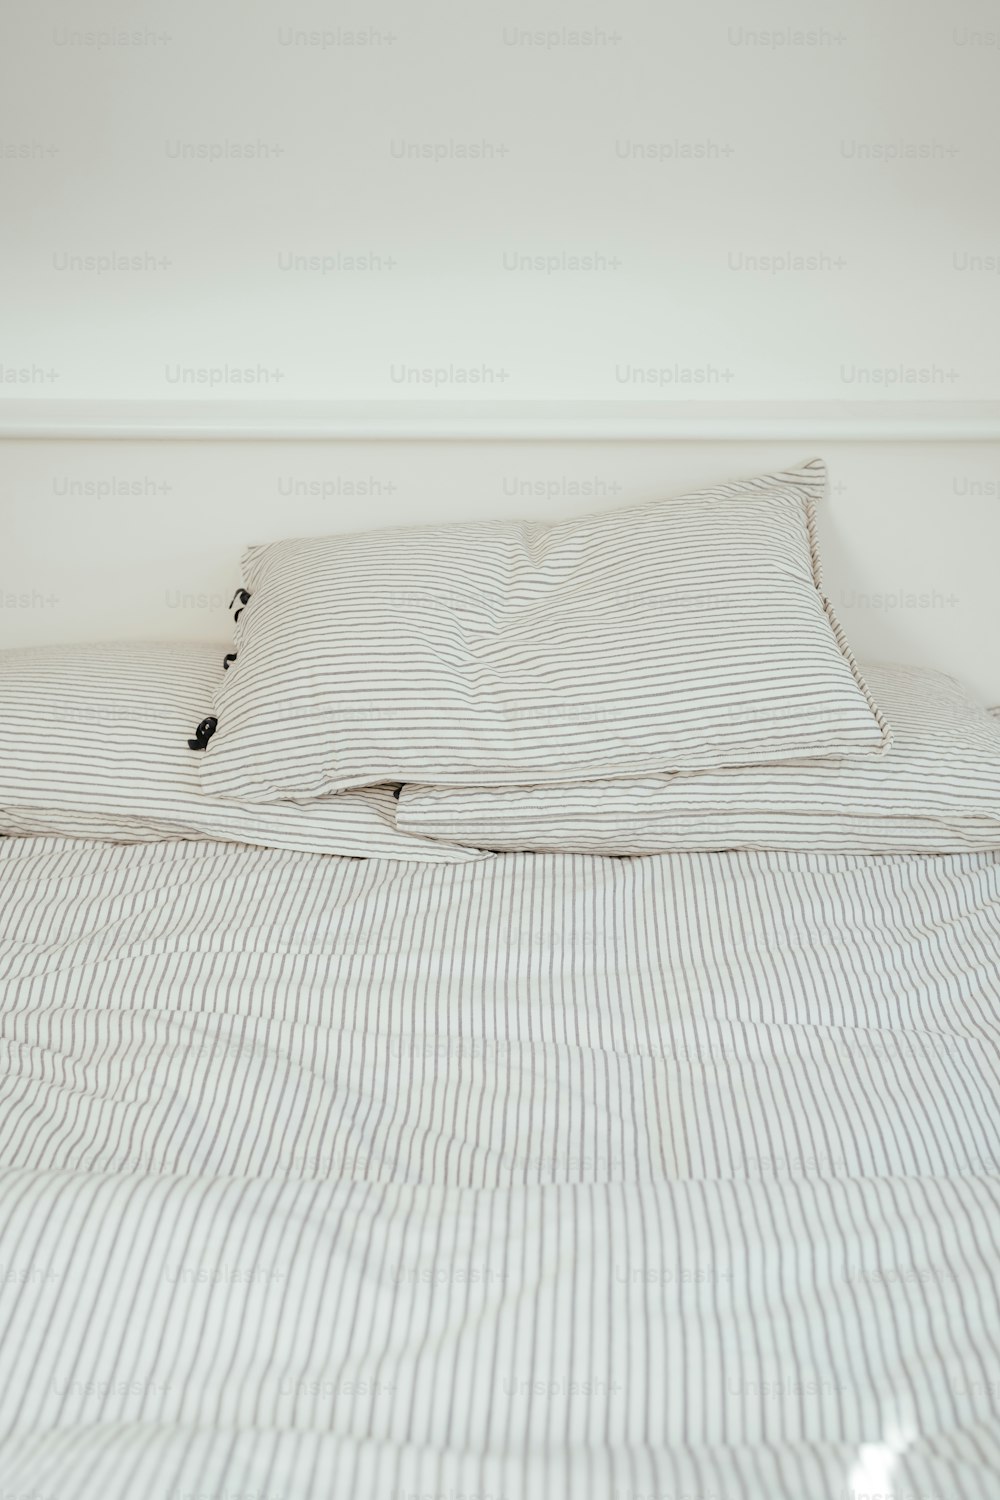 ein Bett mit einer weiß-schwarz gestreiften Bettdecke